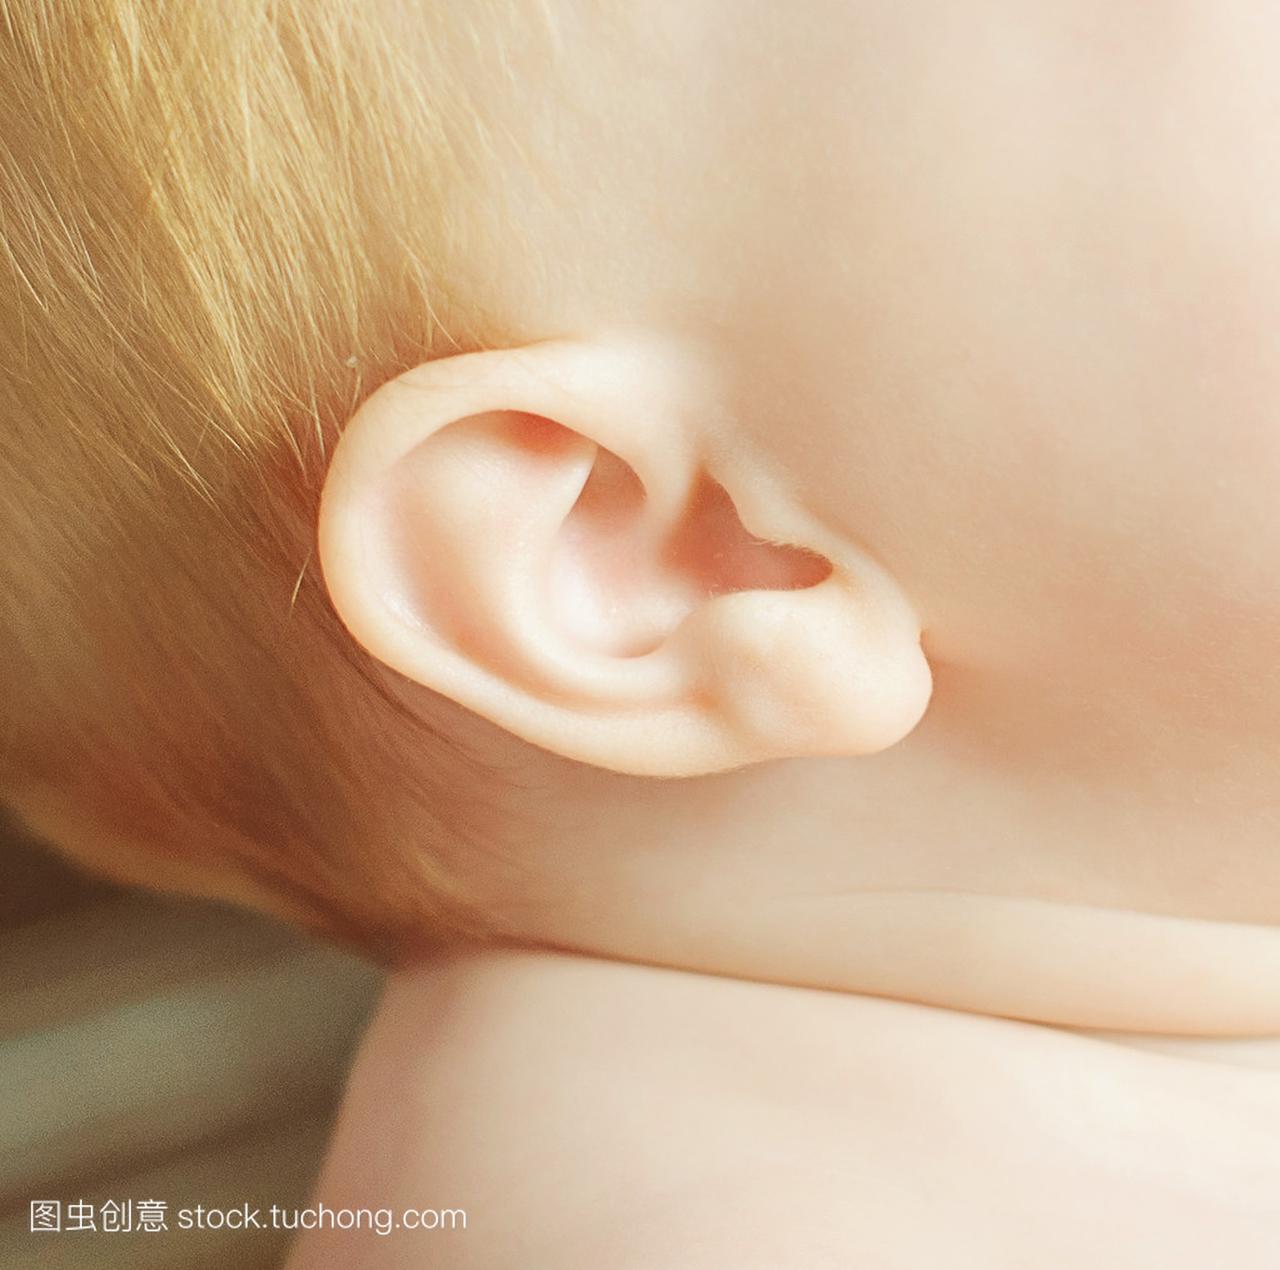 孩子的耳朵的照片